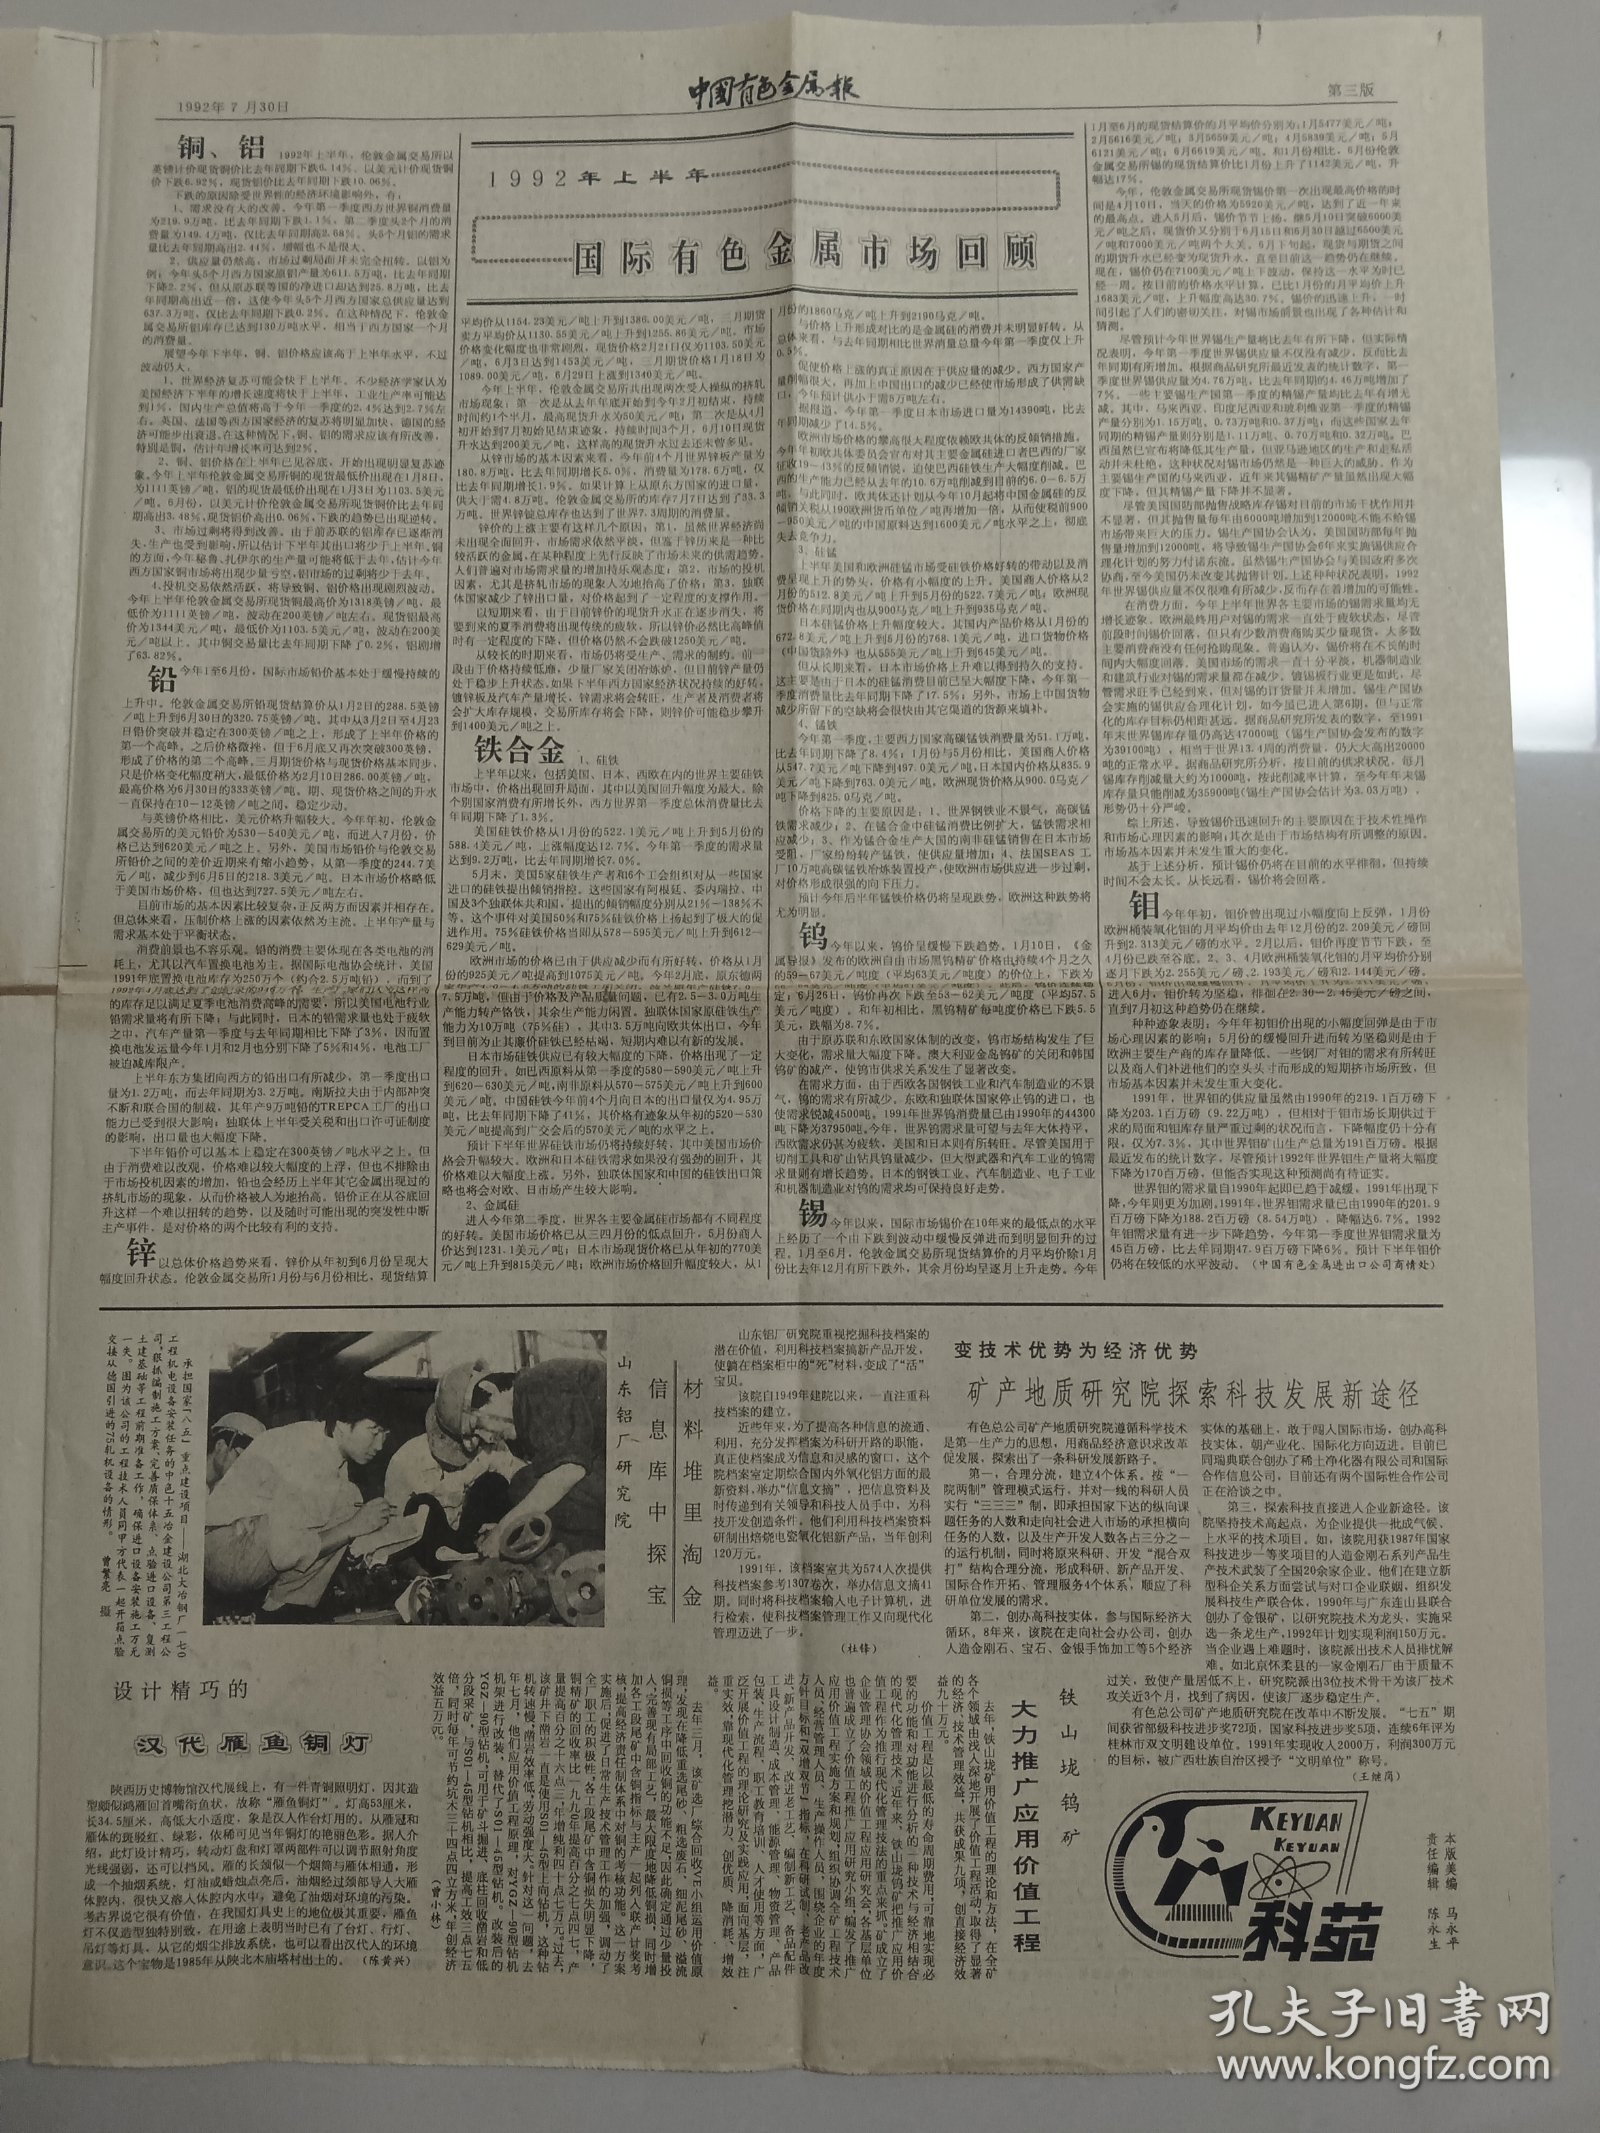 中国有色金属报 1992年7月30日（10份之内只收一个邮费）